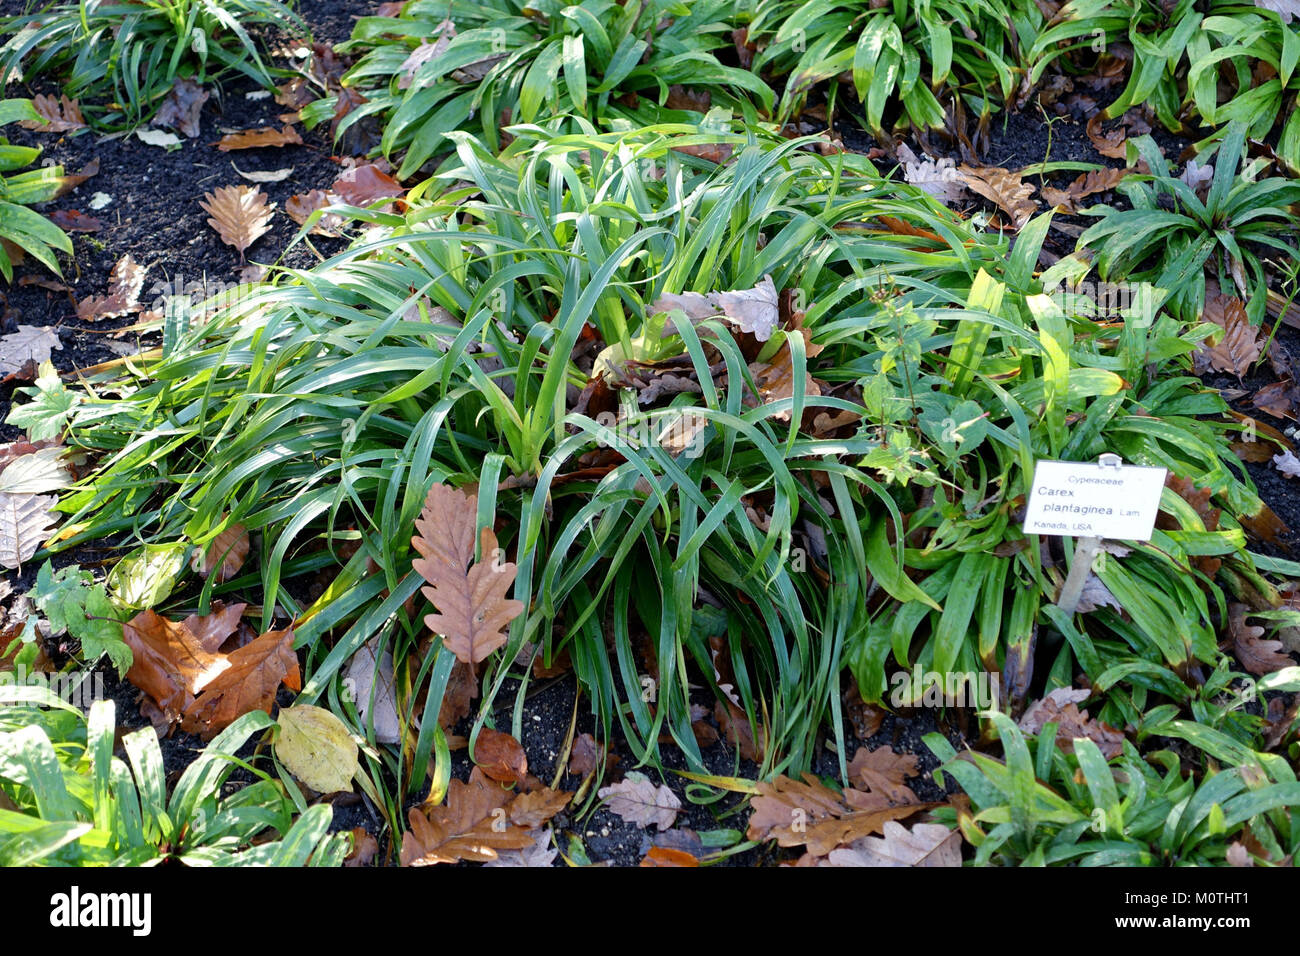 Carex plantaginea - Botanischer Garten Braunschweig - Braunschweig, Germany - DSC04392 Stock Photo